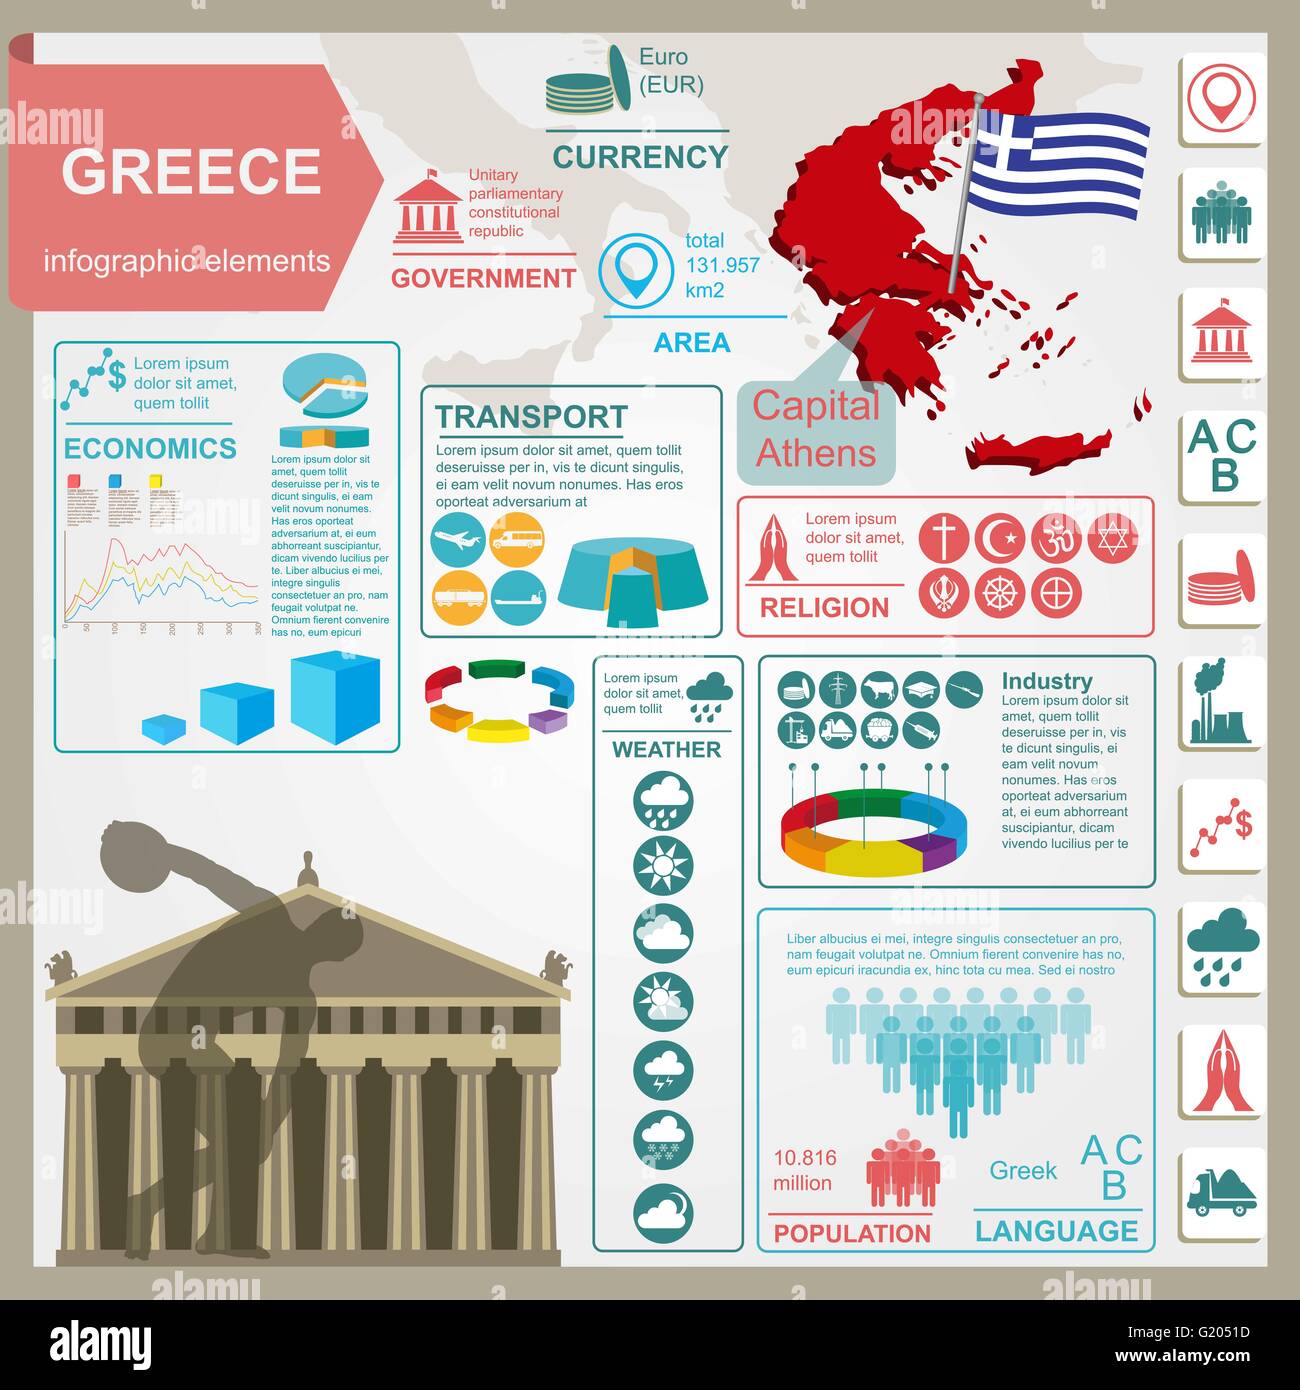 Infografia sobre Grecia 13241